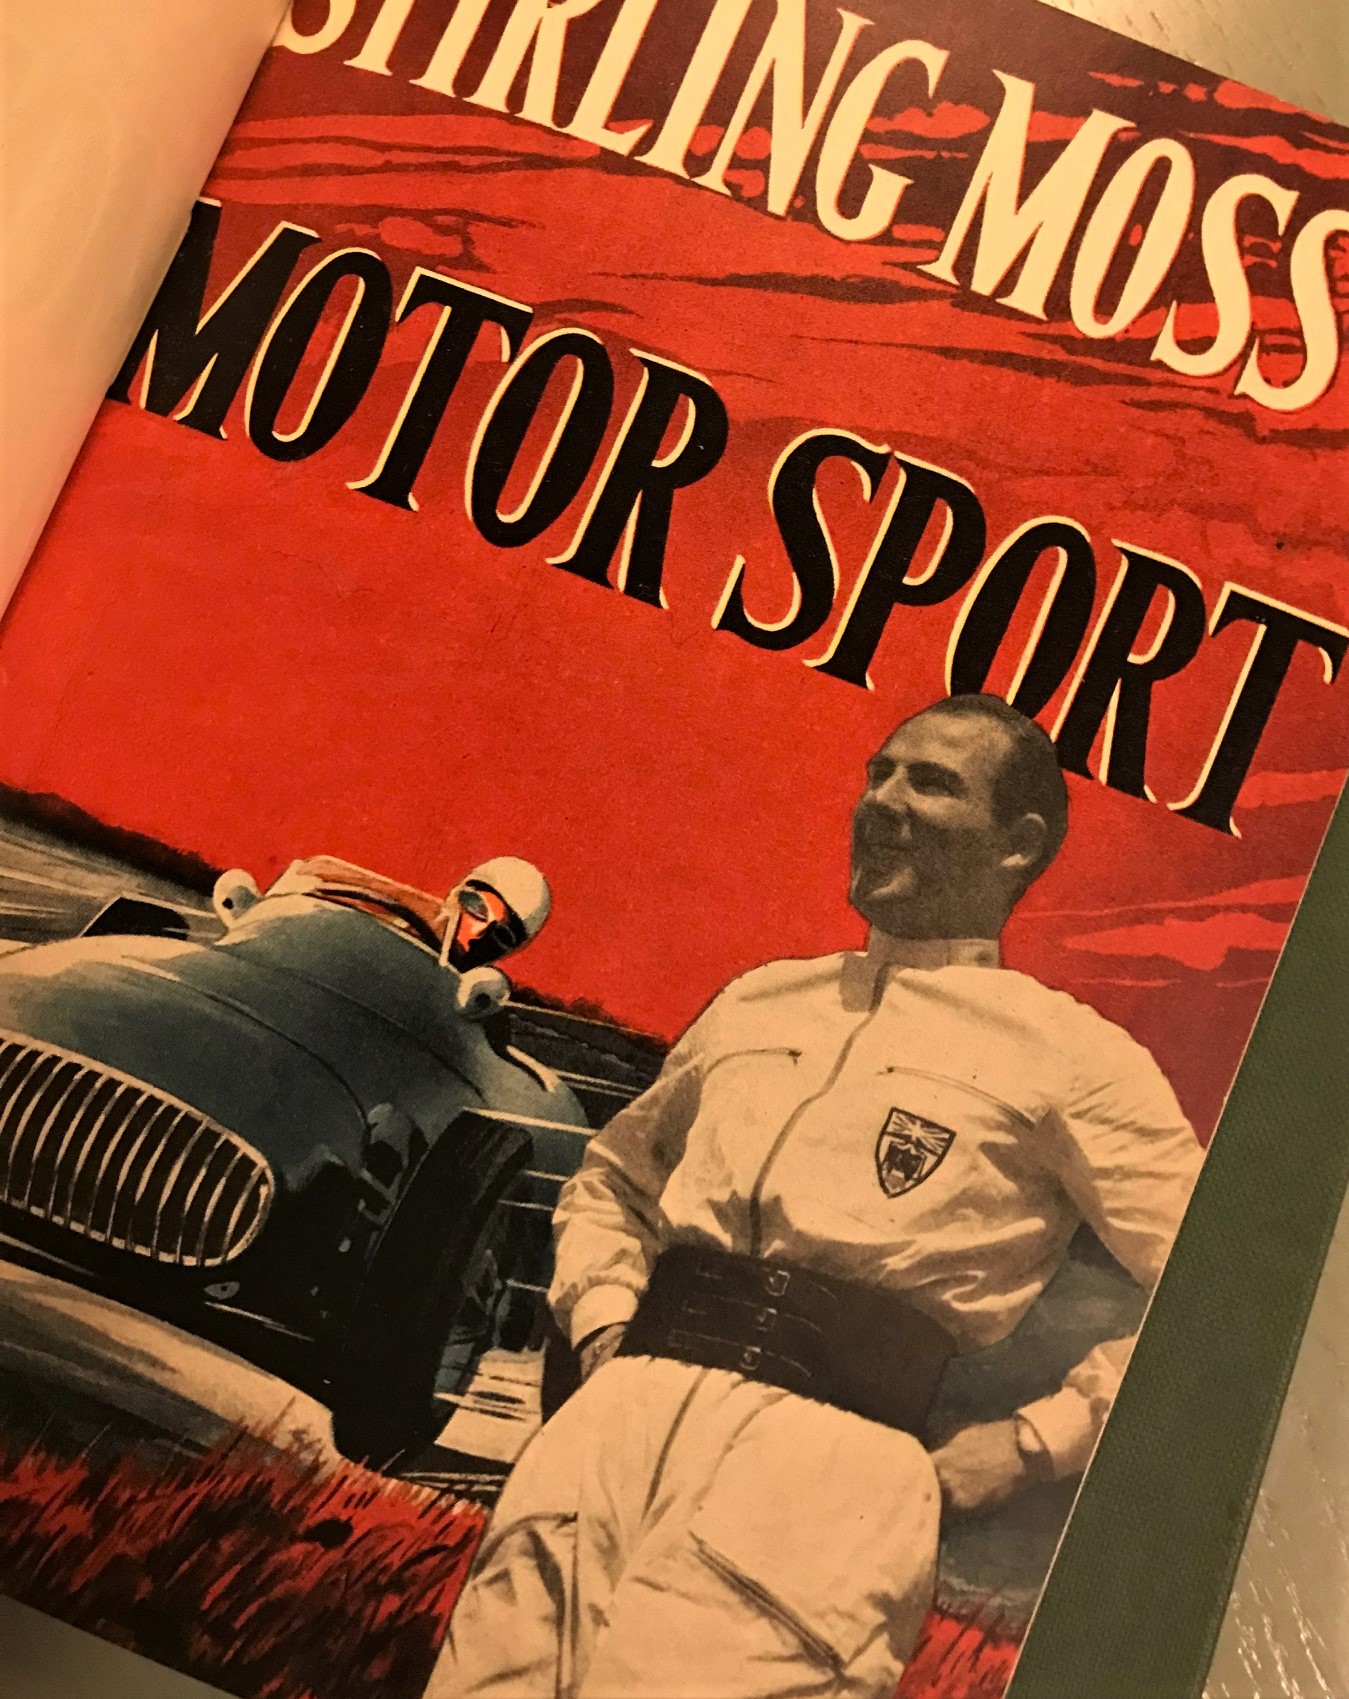 Stirling Moss: Motorsport + Nya Segrar - 2 historiska böcker, svenska, 50-tal, 19 x 26 cm